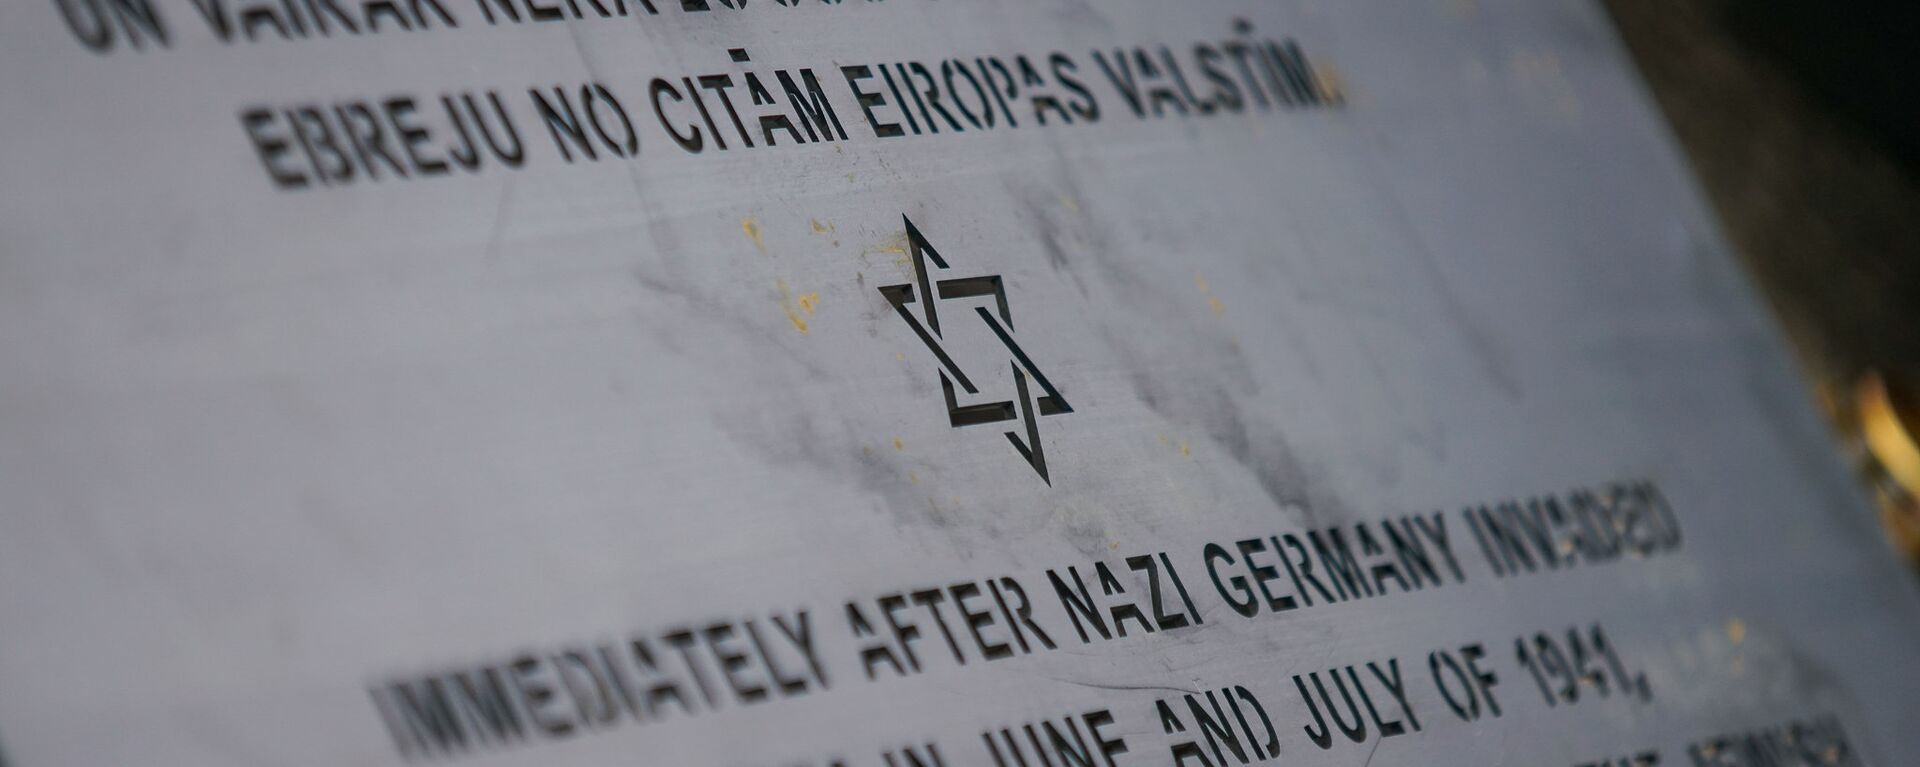 День памяти жертв геноцида еврейского народа - Sputnik Латвия, 1920, 12.06.2019